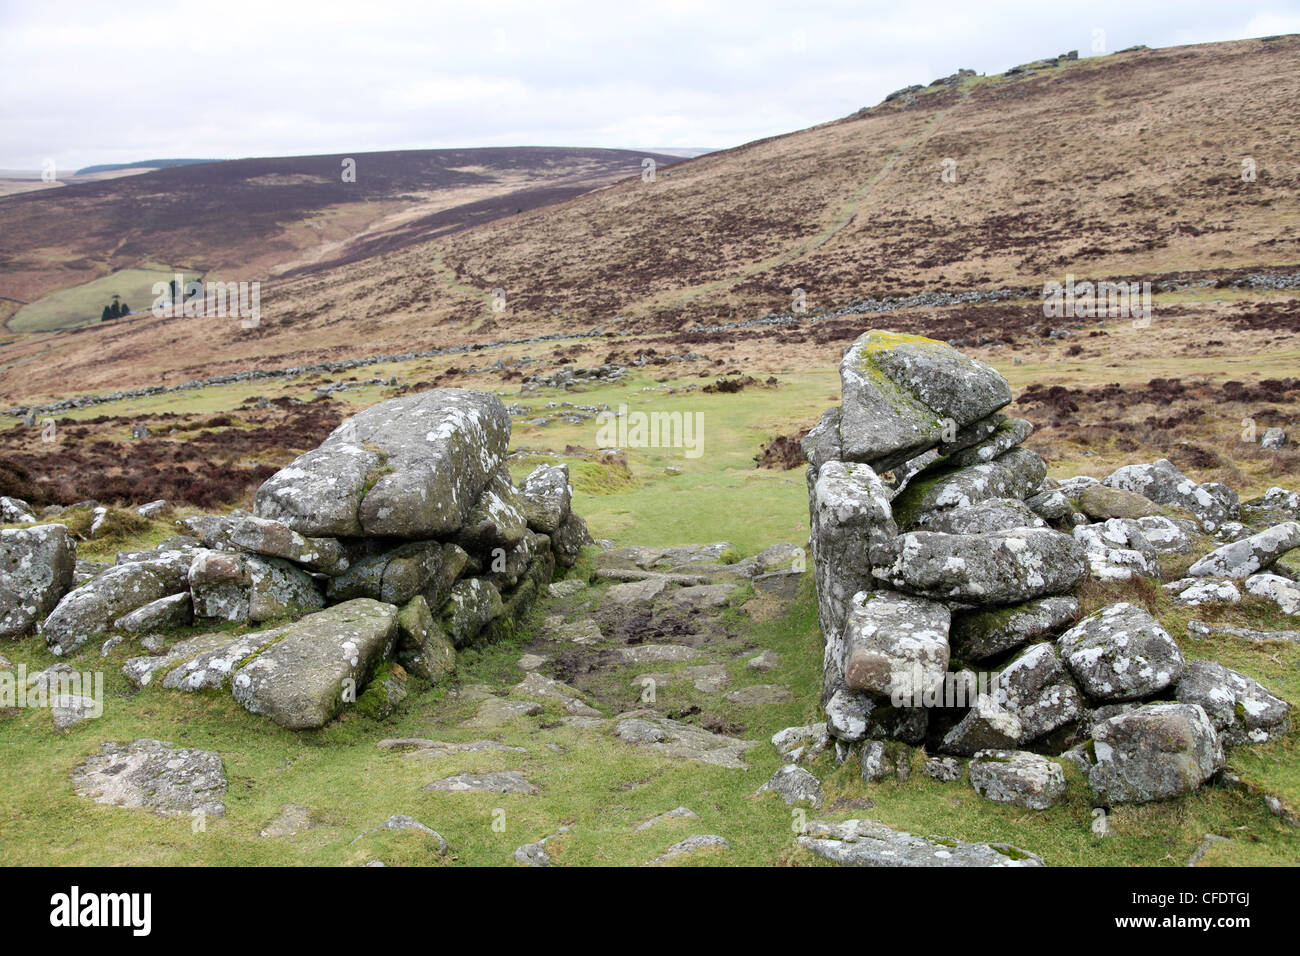 Rochers de granit formant l'entrée de Grimspound, un camp de l'âge du bronze 3500 ans, Dartmoor, dans le Devon, Angleterre, Royaume-Uni Banque D'Images